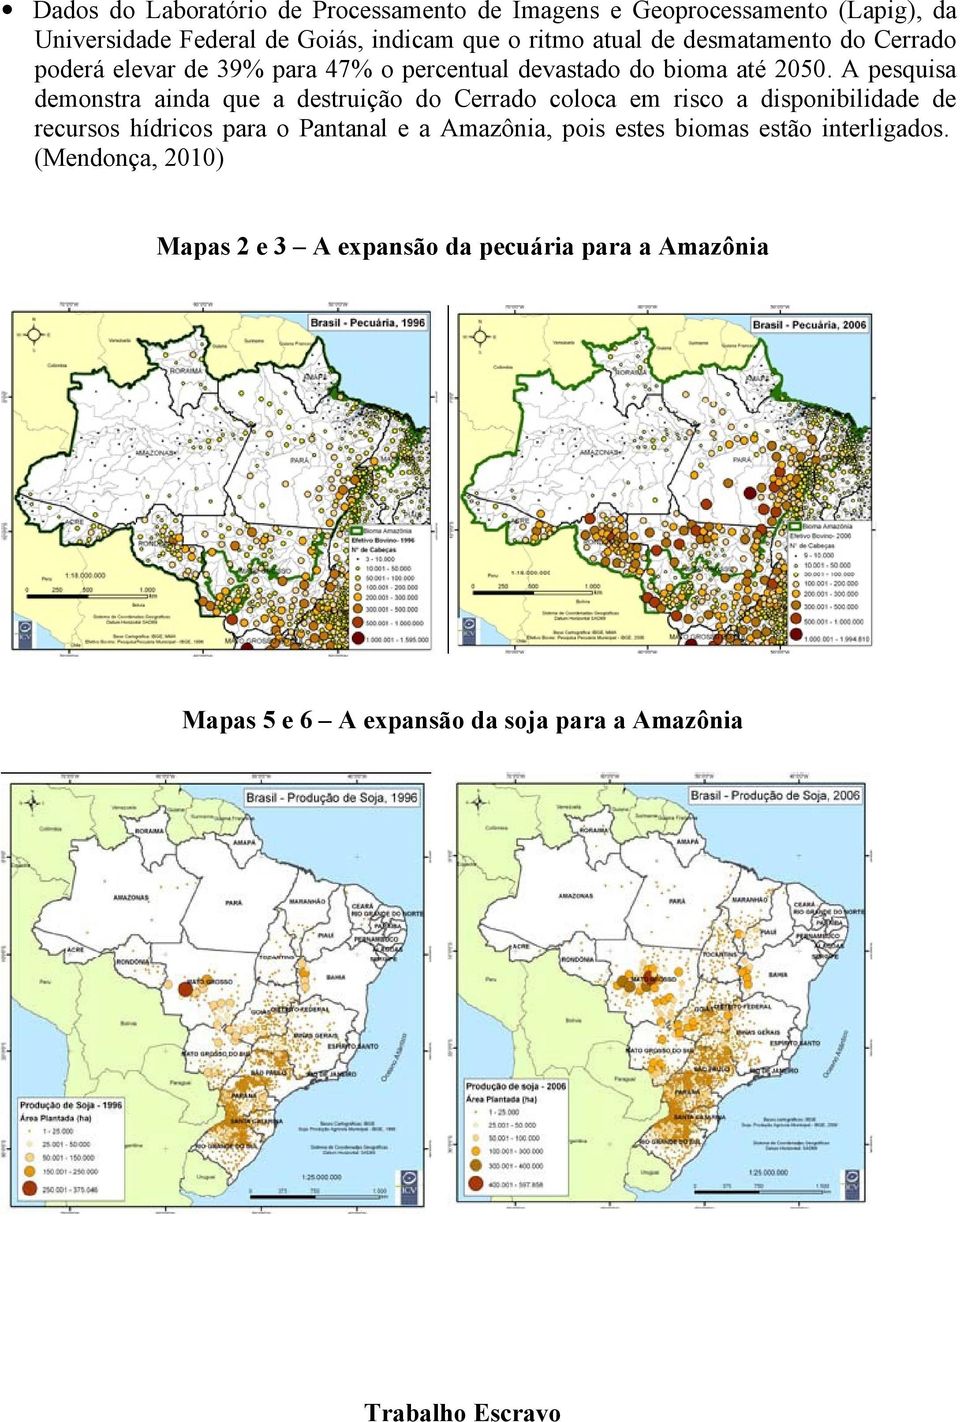 A pesquisa demonstra ainda que a destruição do Cerrado coloca em risco a disponibilidade de recursos hídricos para o Pantanal e a